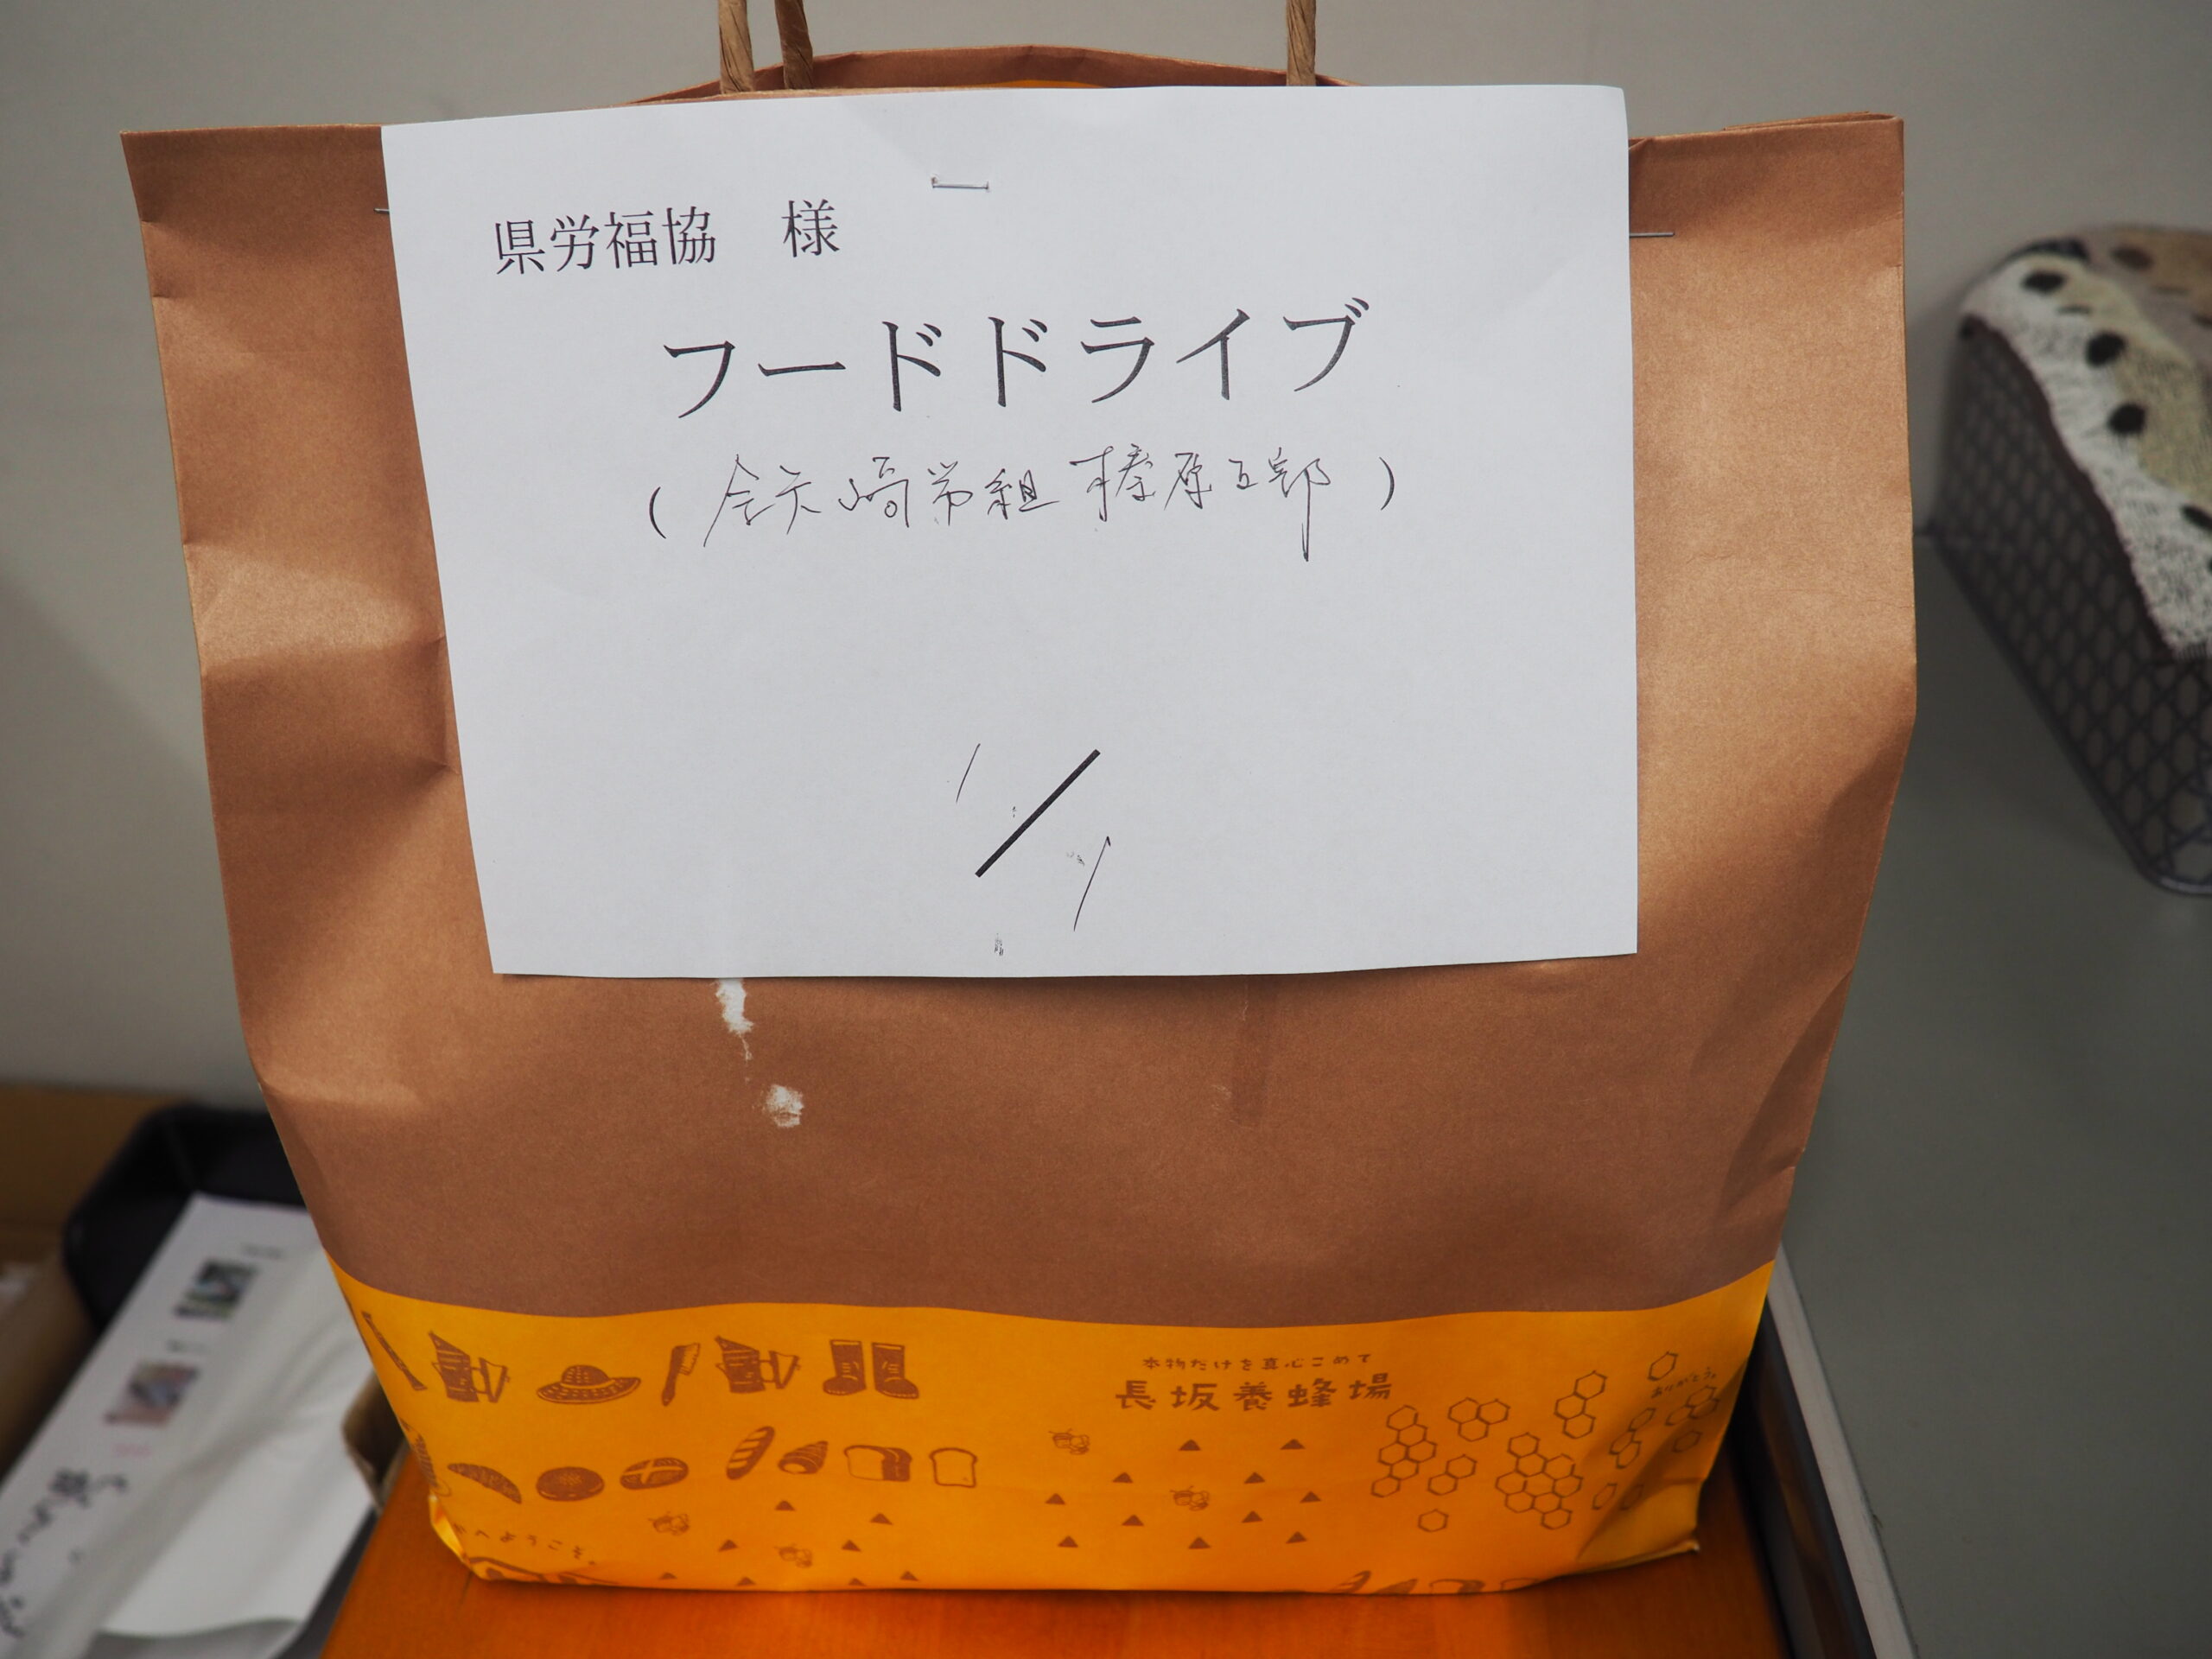 全矢崎労働組合榛原支部様・東遠地域労働者福祉協議会様から食品を提供いただきました。